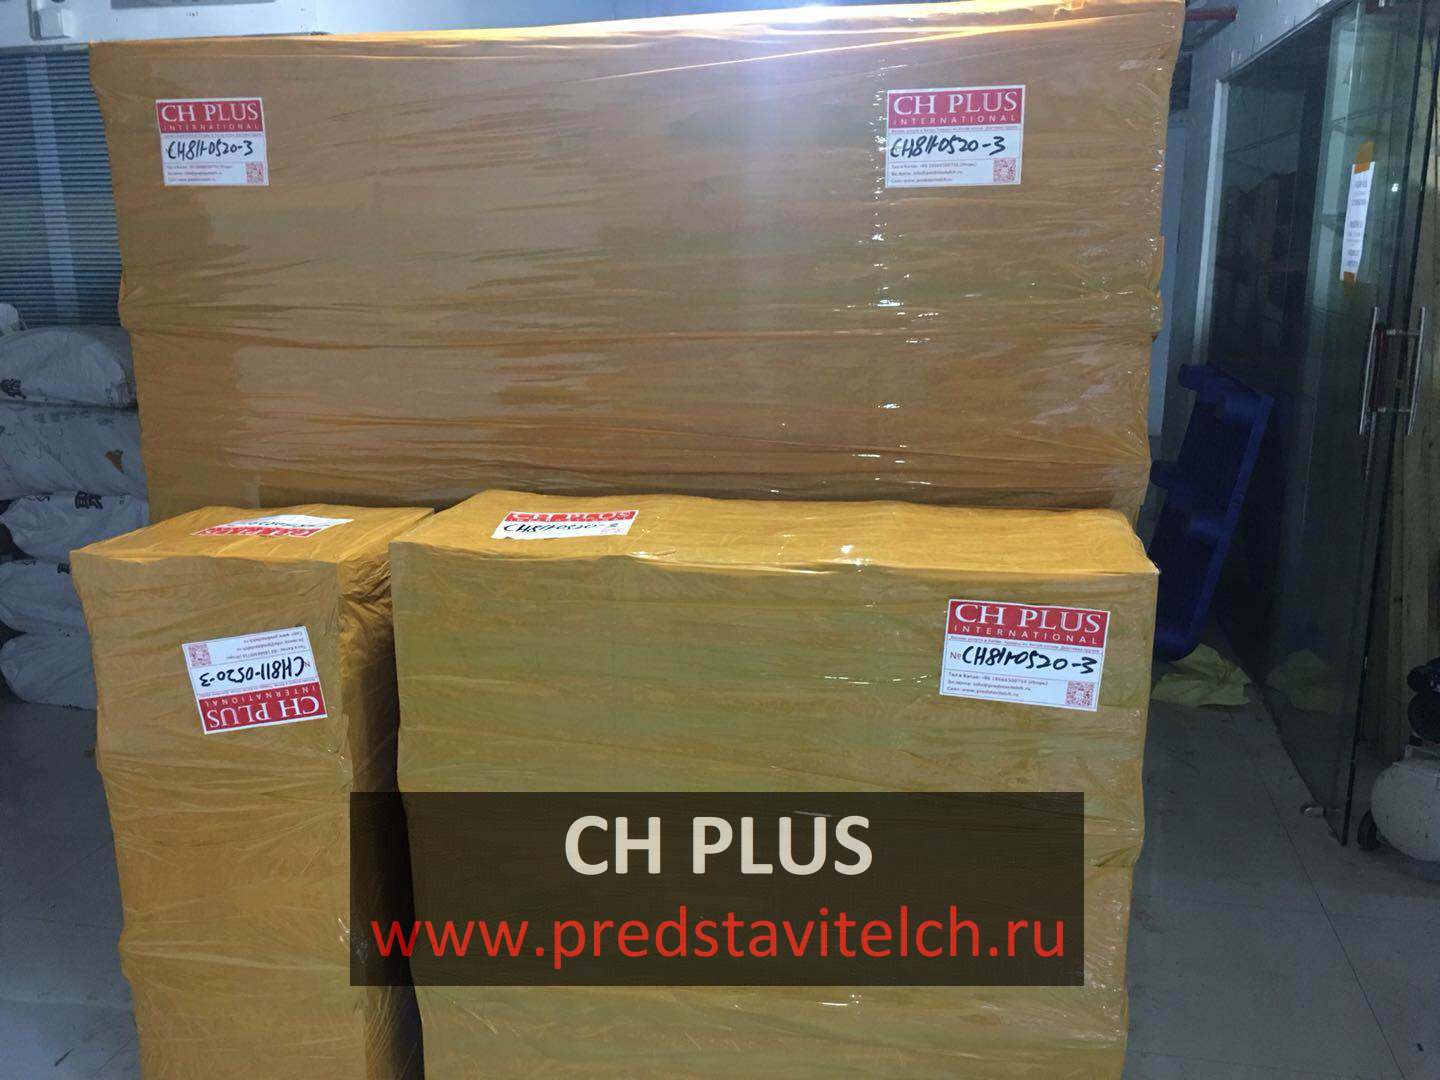 CH PLUS - доставка грузов из Китая в Россию и страны СНГ